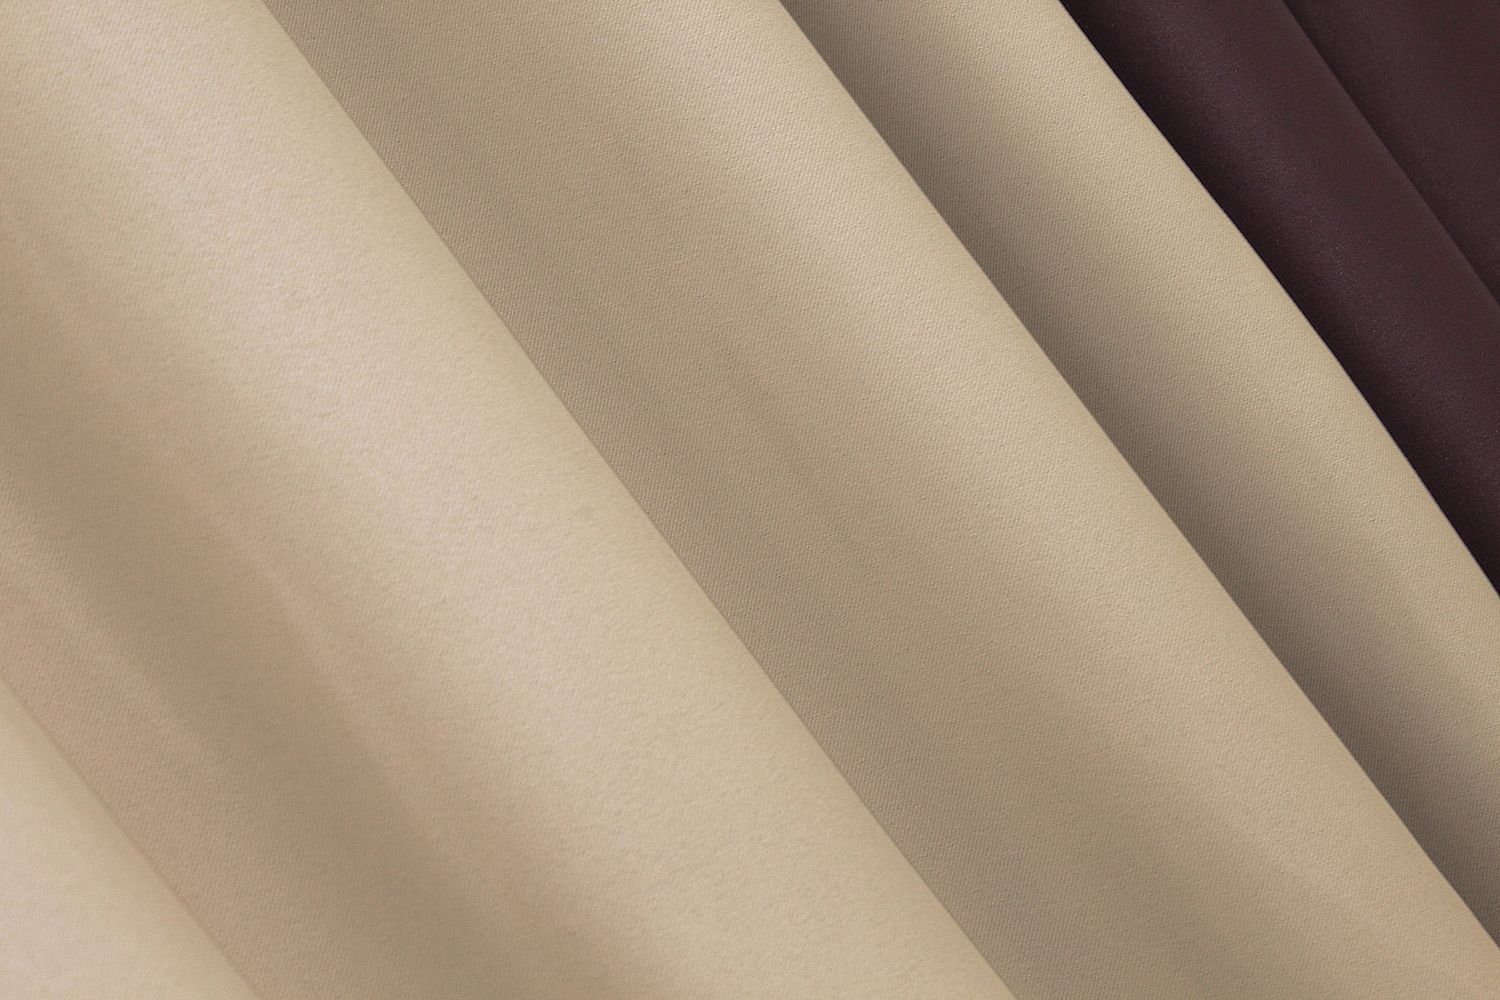 Комбинированные шторы из ткани блэкаут цвет марсала с бежевым 014дк (827-828ш), Марсала с бежевым, Комплект штор (2шт. 1,5х2,7м.), Классические, Длинные, 1,5 м., 2,7 м., 150, 270, 2 - 3 м., В комплекте 2 шт., Тесьма